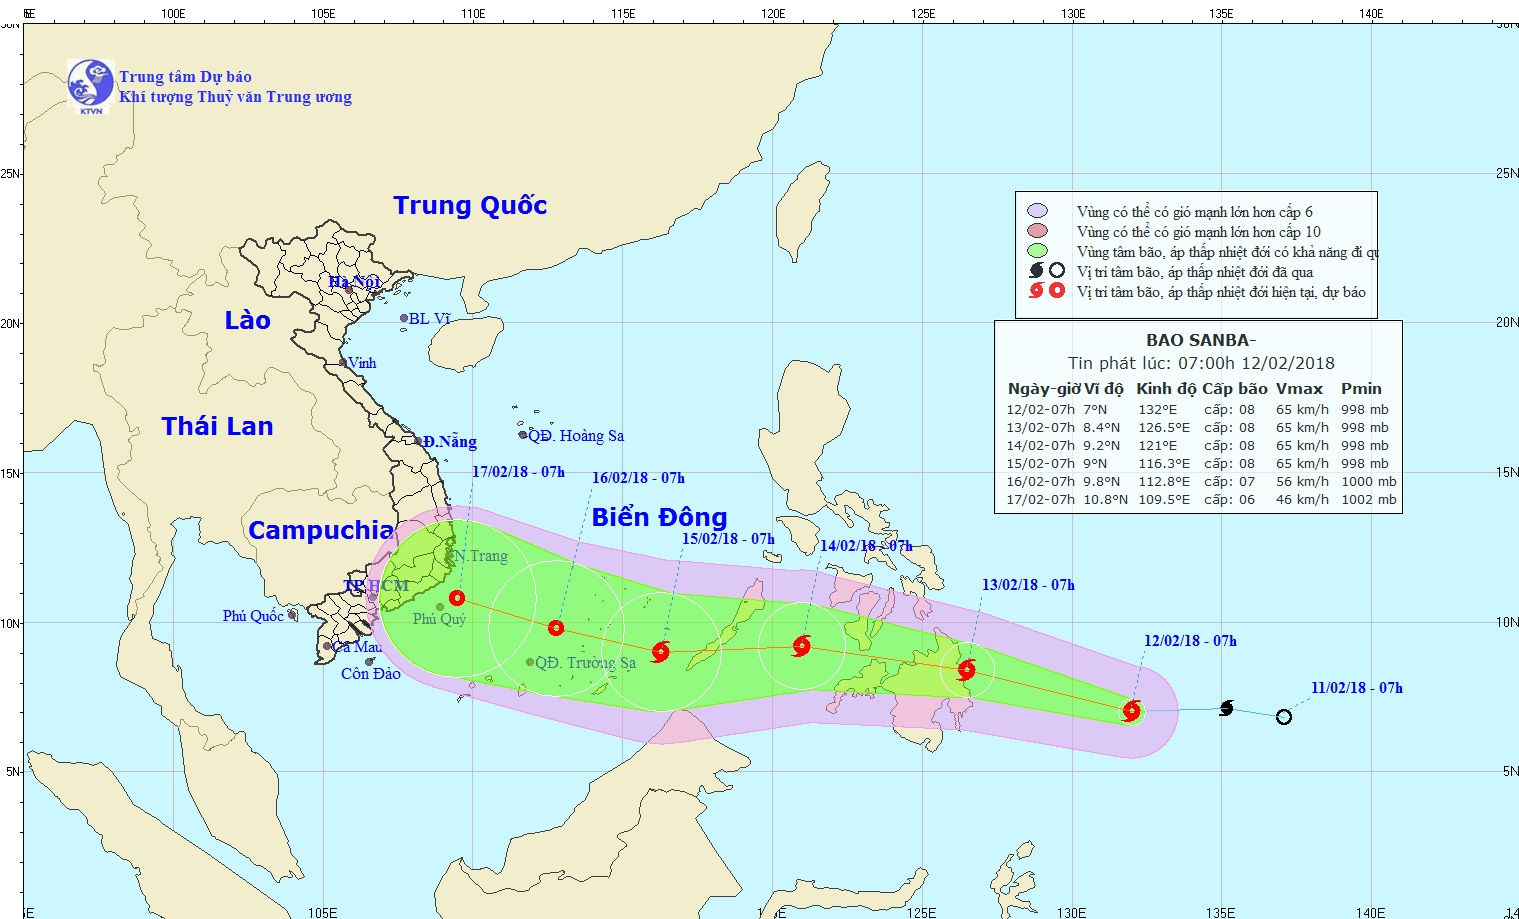 Dự báo hướng di chuyển và cường độ bão Sanba khi vào Biển Đông.